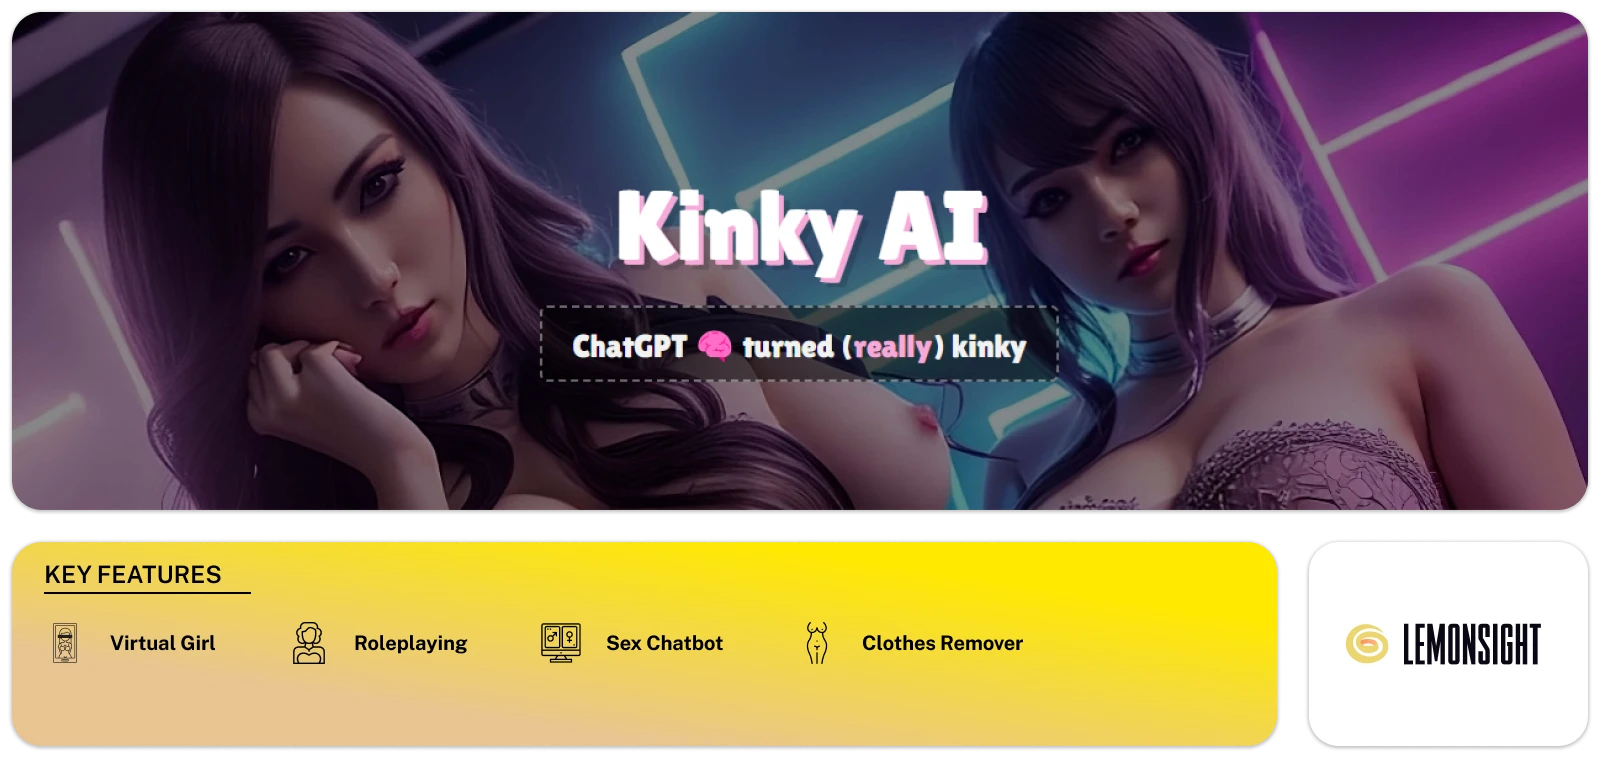 KinkyAI Feature Image